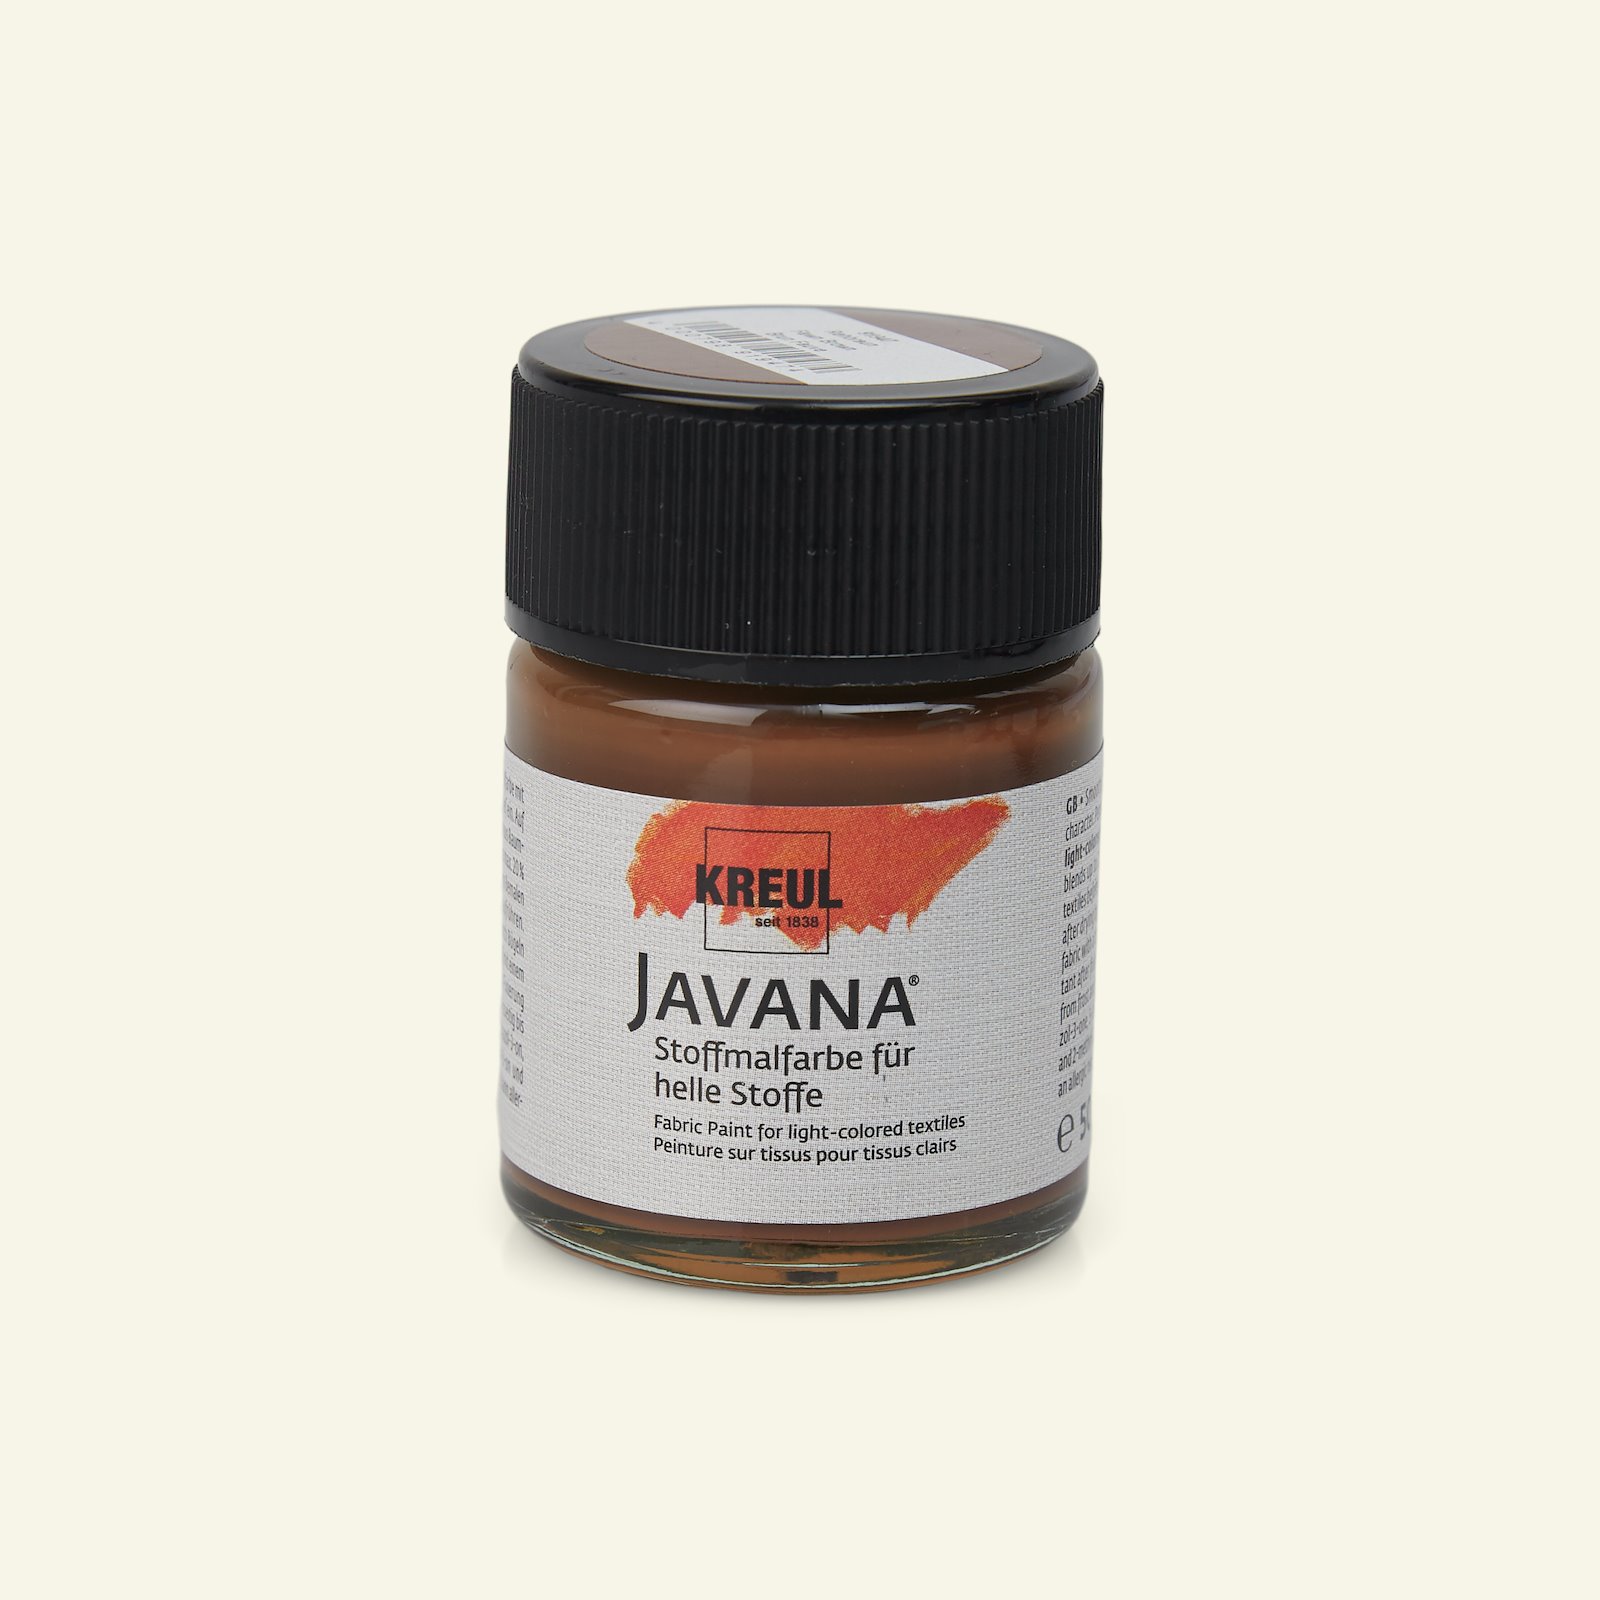 Javana textilfärg, brun, 50ml 29618_pack_b